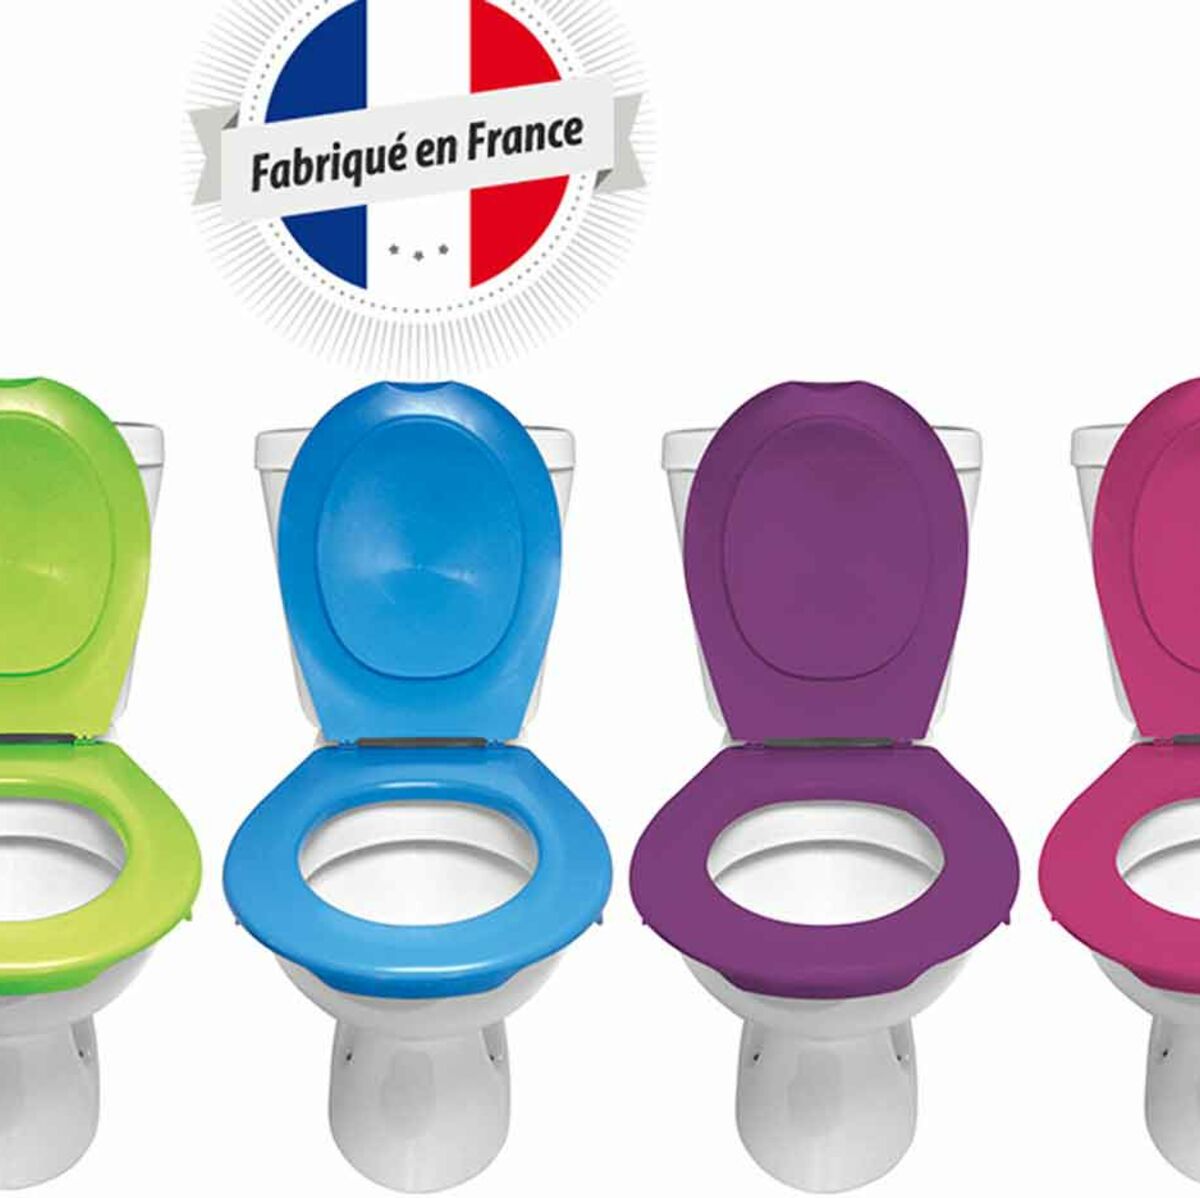 Amovible Et Coloree Une Lunette De Toilettes Hygienique Et Made In France Femme Actuelle Le Mag